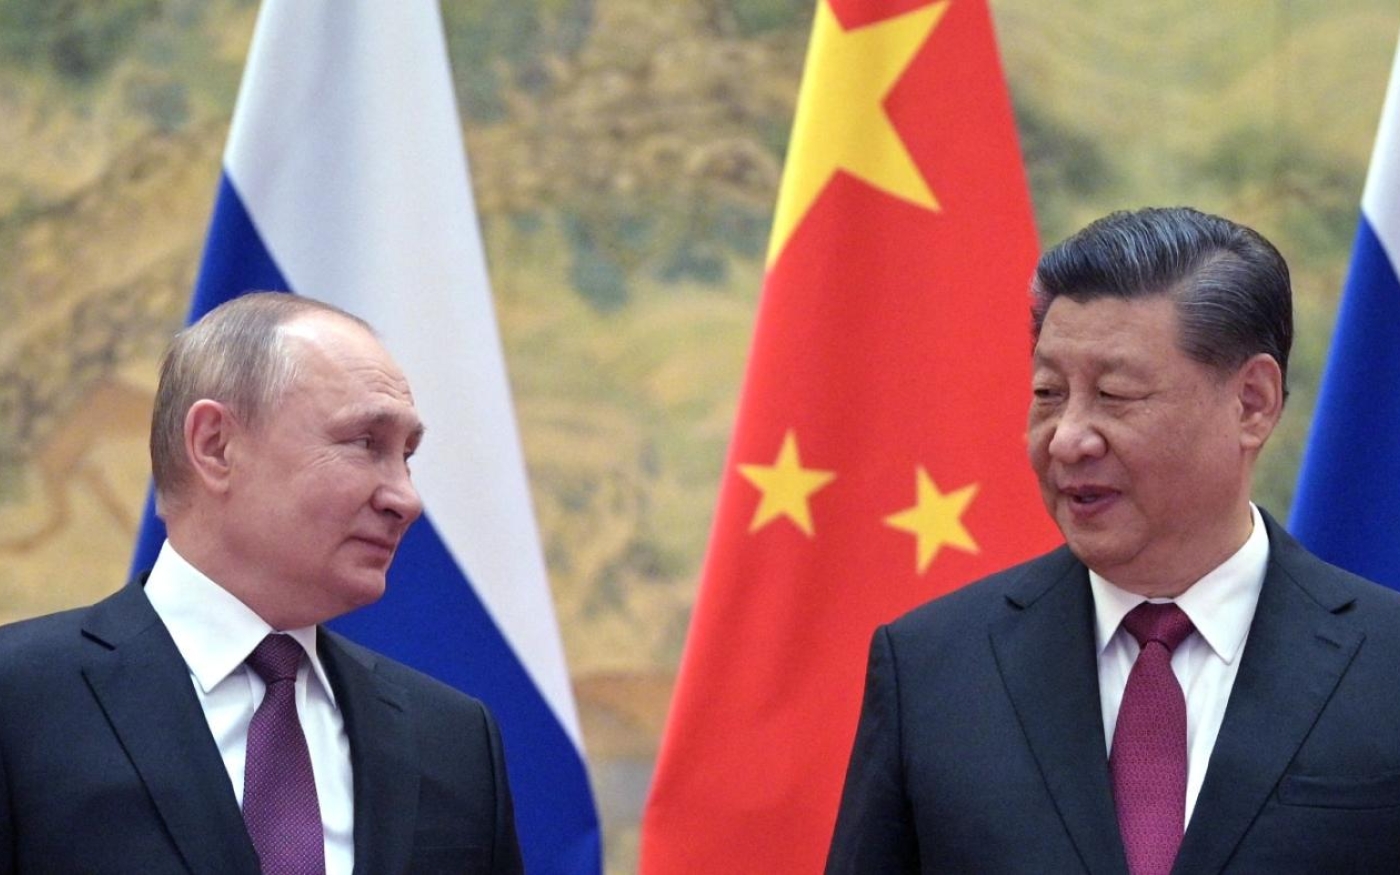 Vladimir Poutine a annoncé mercredi attendre une prochaine visite du président chinois en Russie, sans en préciser la date. Leur relation est scrutée alors que les États-Unis disent craindre que la Chine envisage de fournir des armes à la Russie (AP)